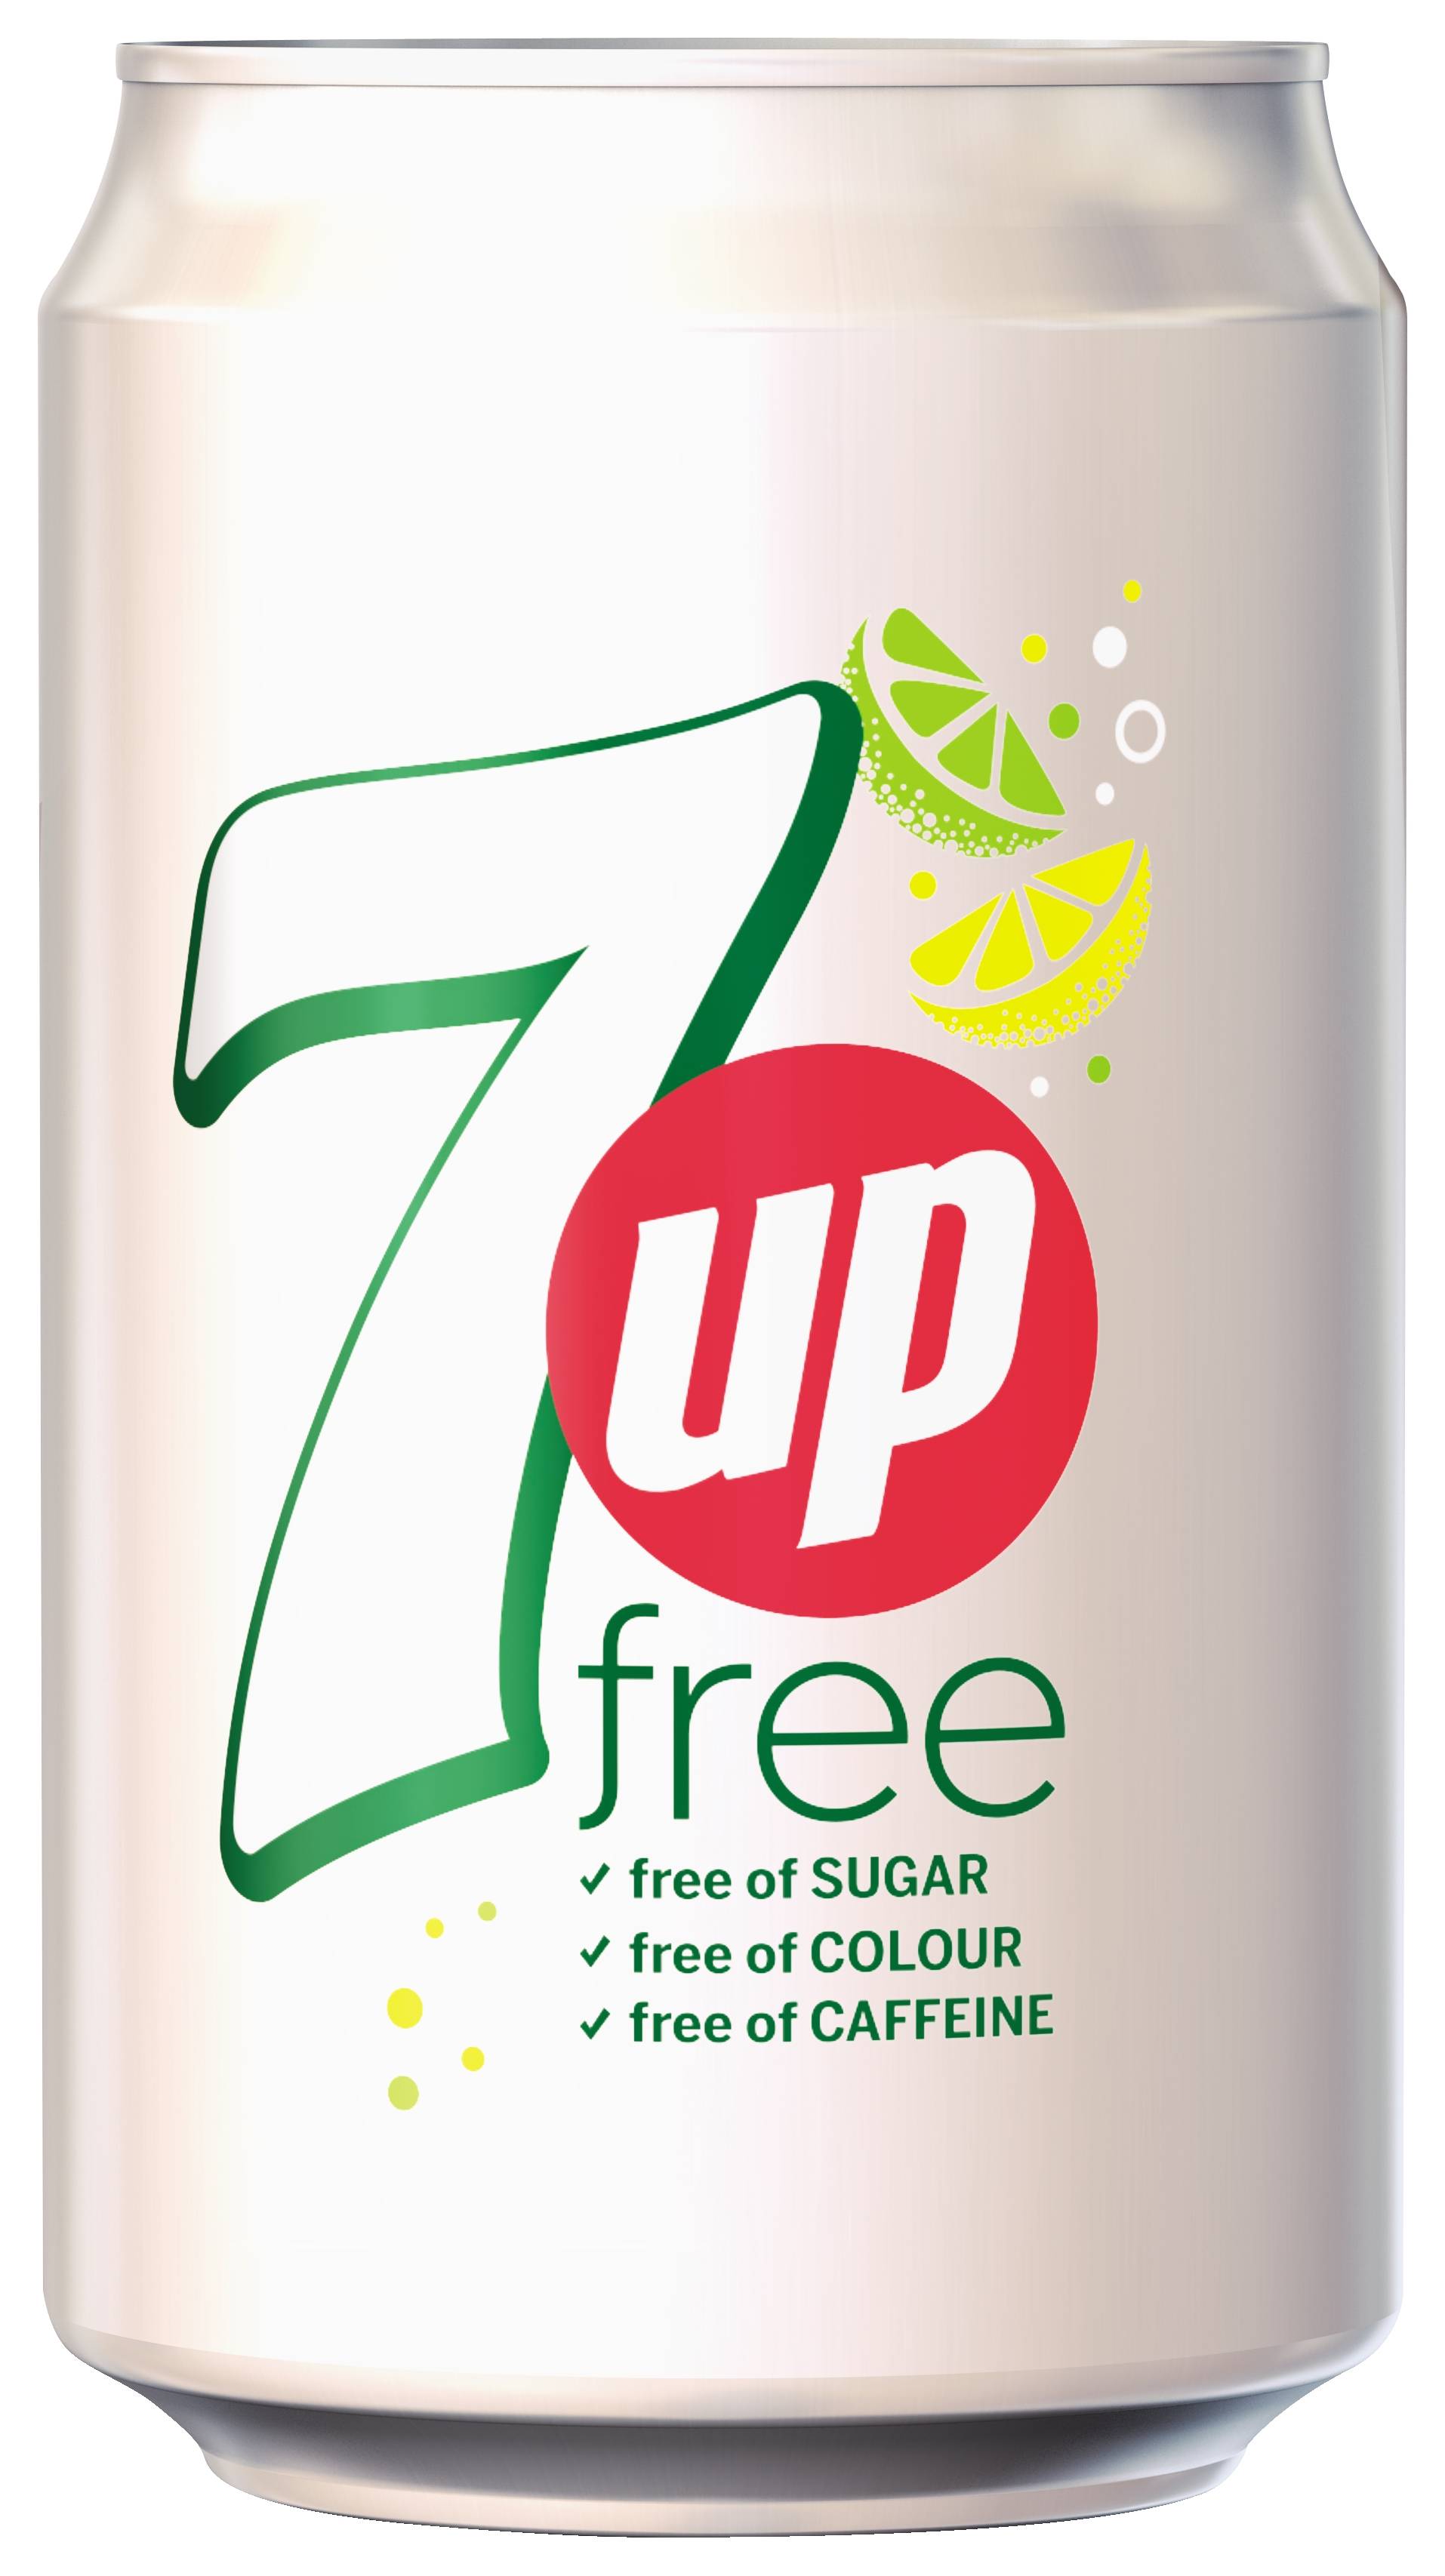 7Up Free, Soda Pop Wiki